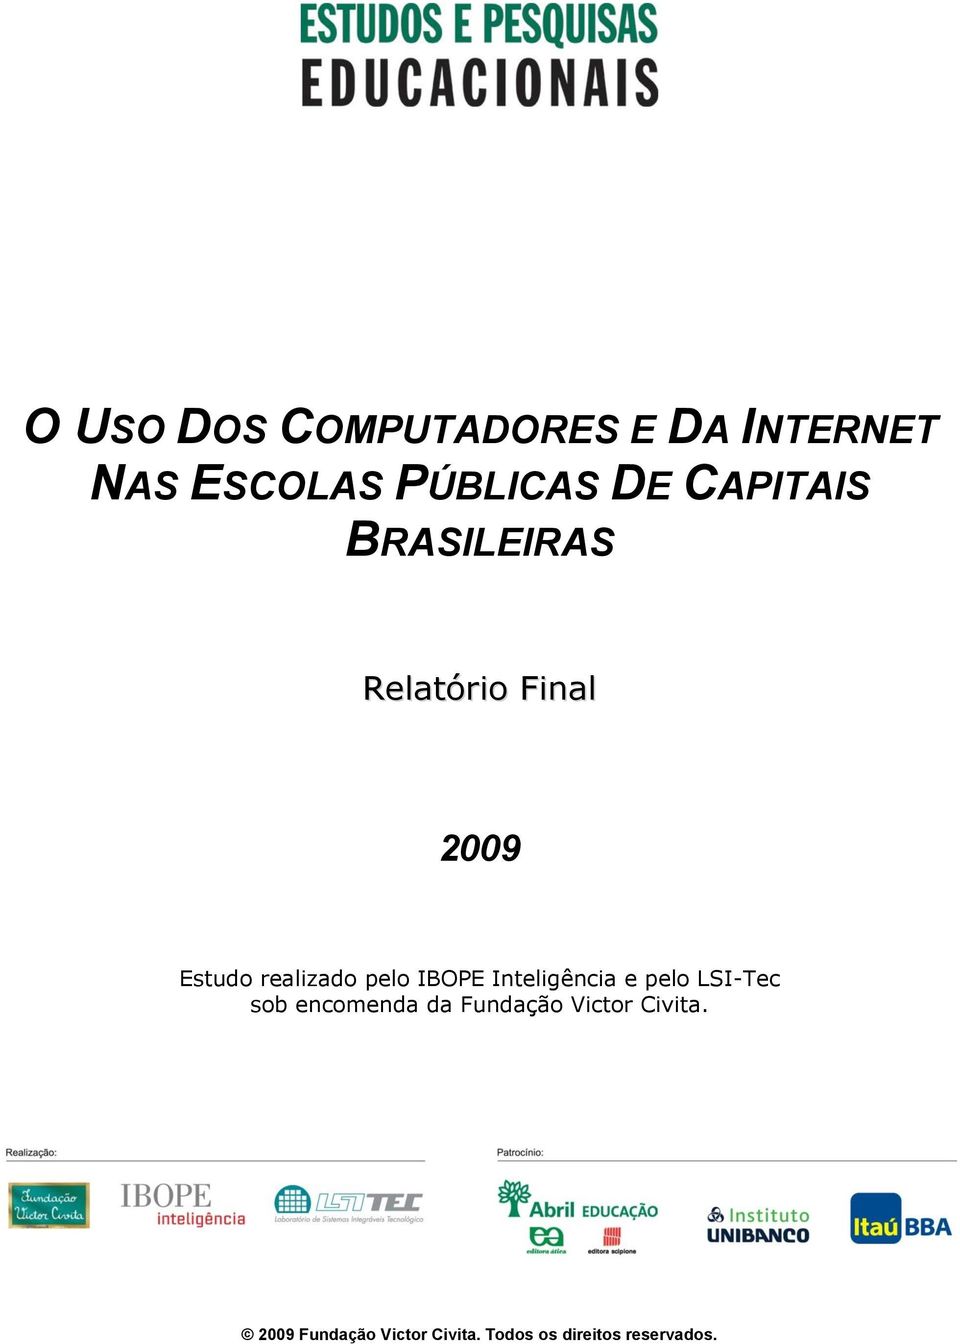 2009 Estudo realizado pelo IBOPE Inteligência e